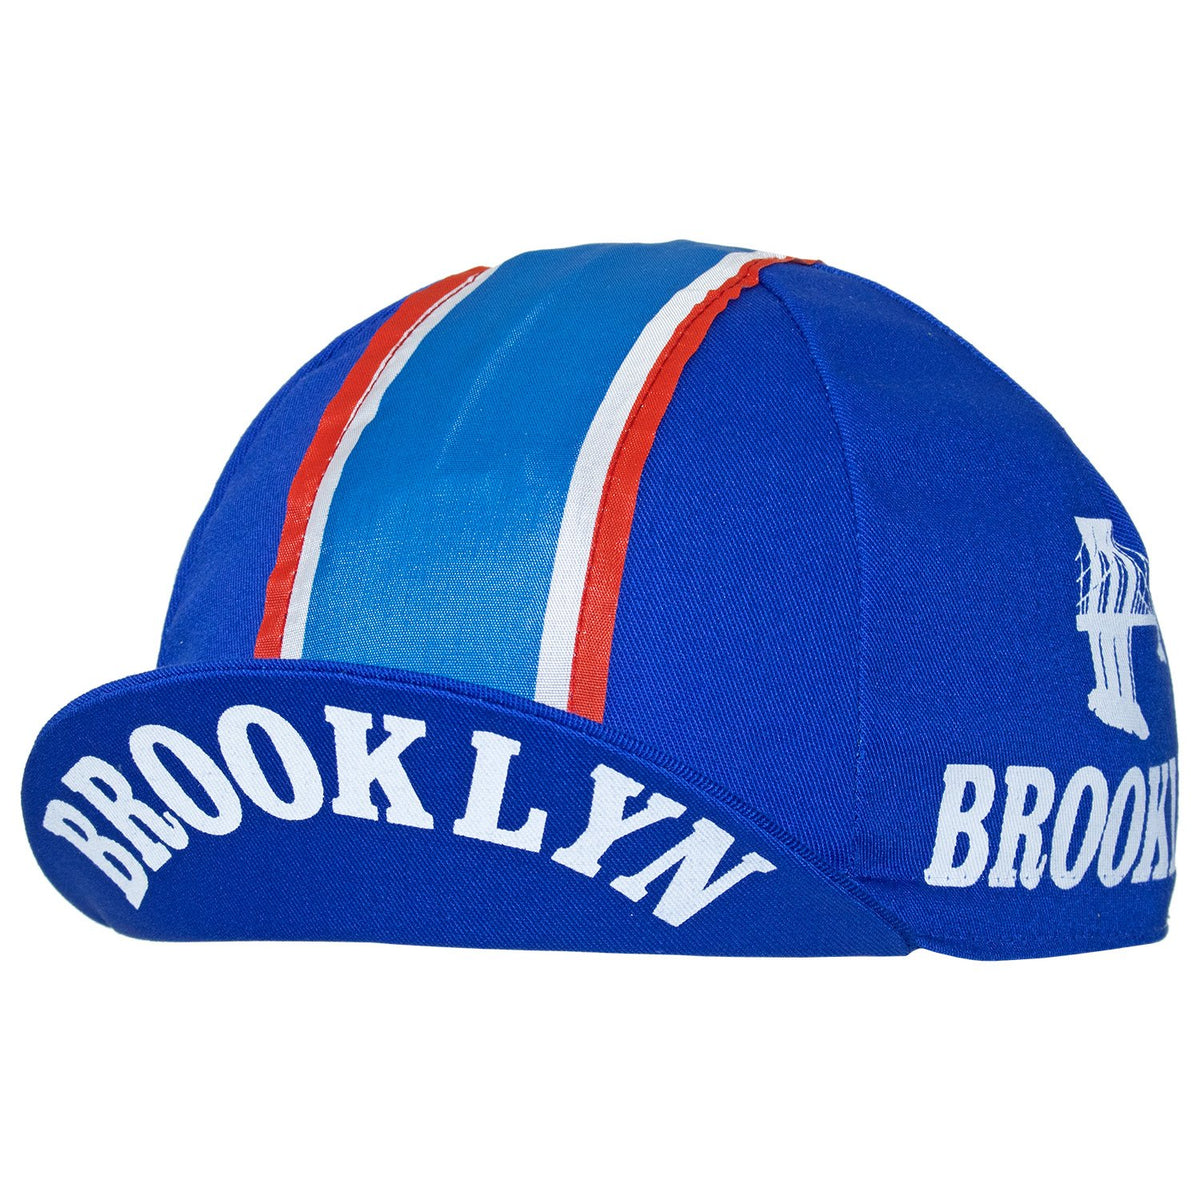 brooklyn cycling hat